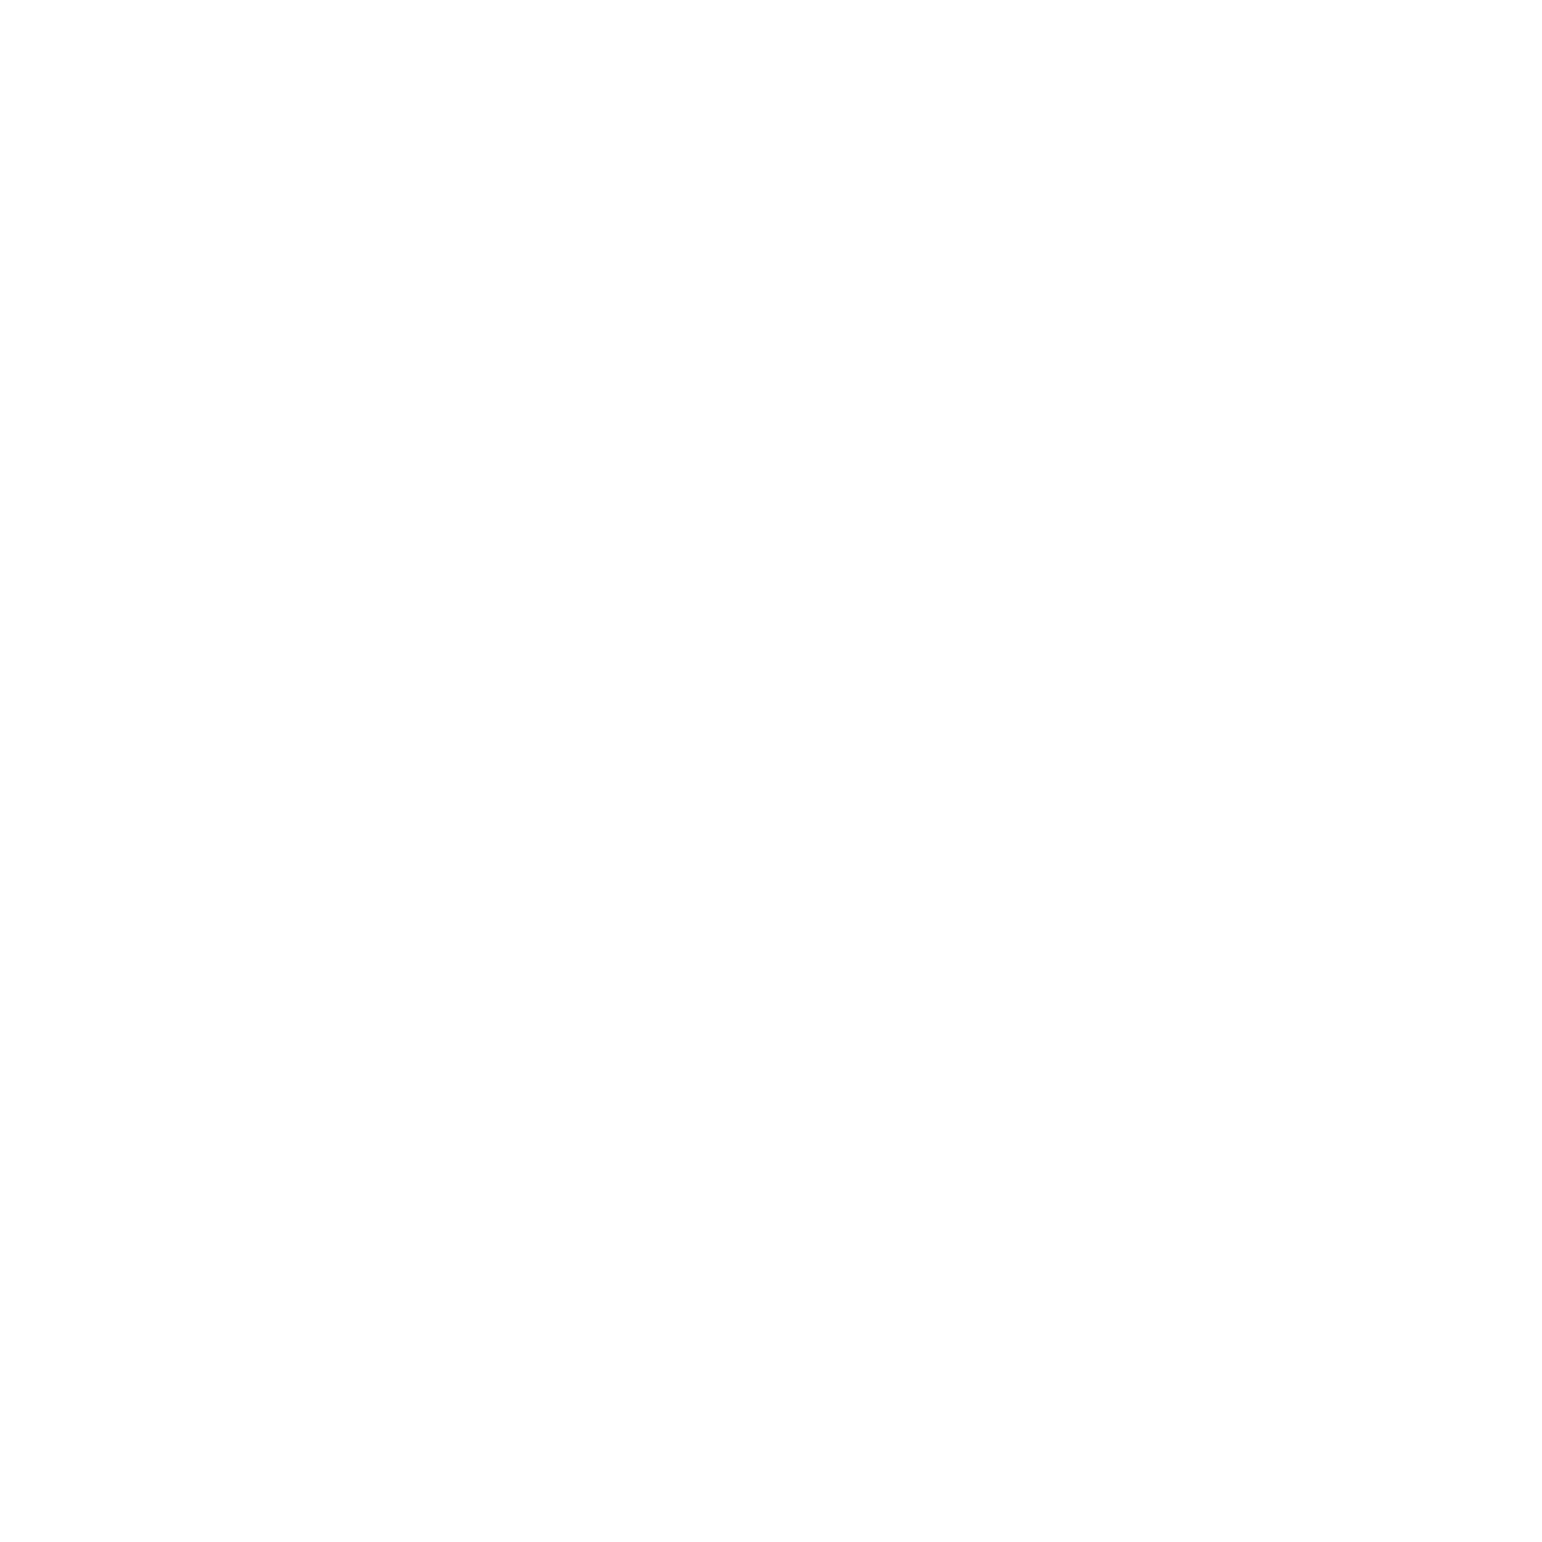 MDA Ltd. logo pour fonds sombres (PNG transparent)